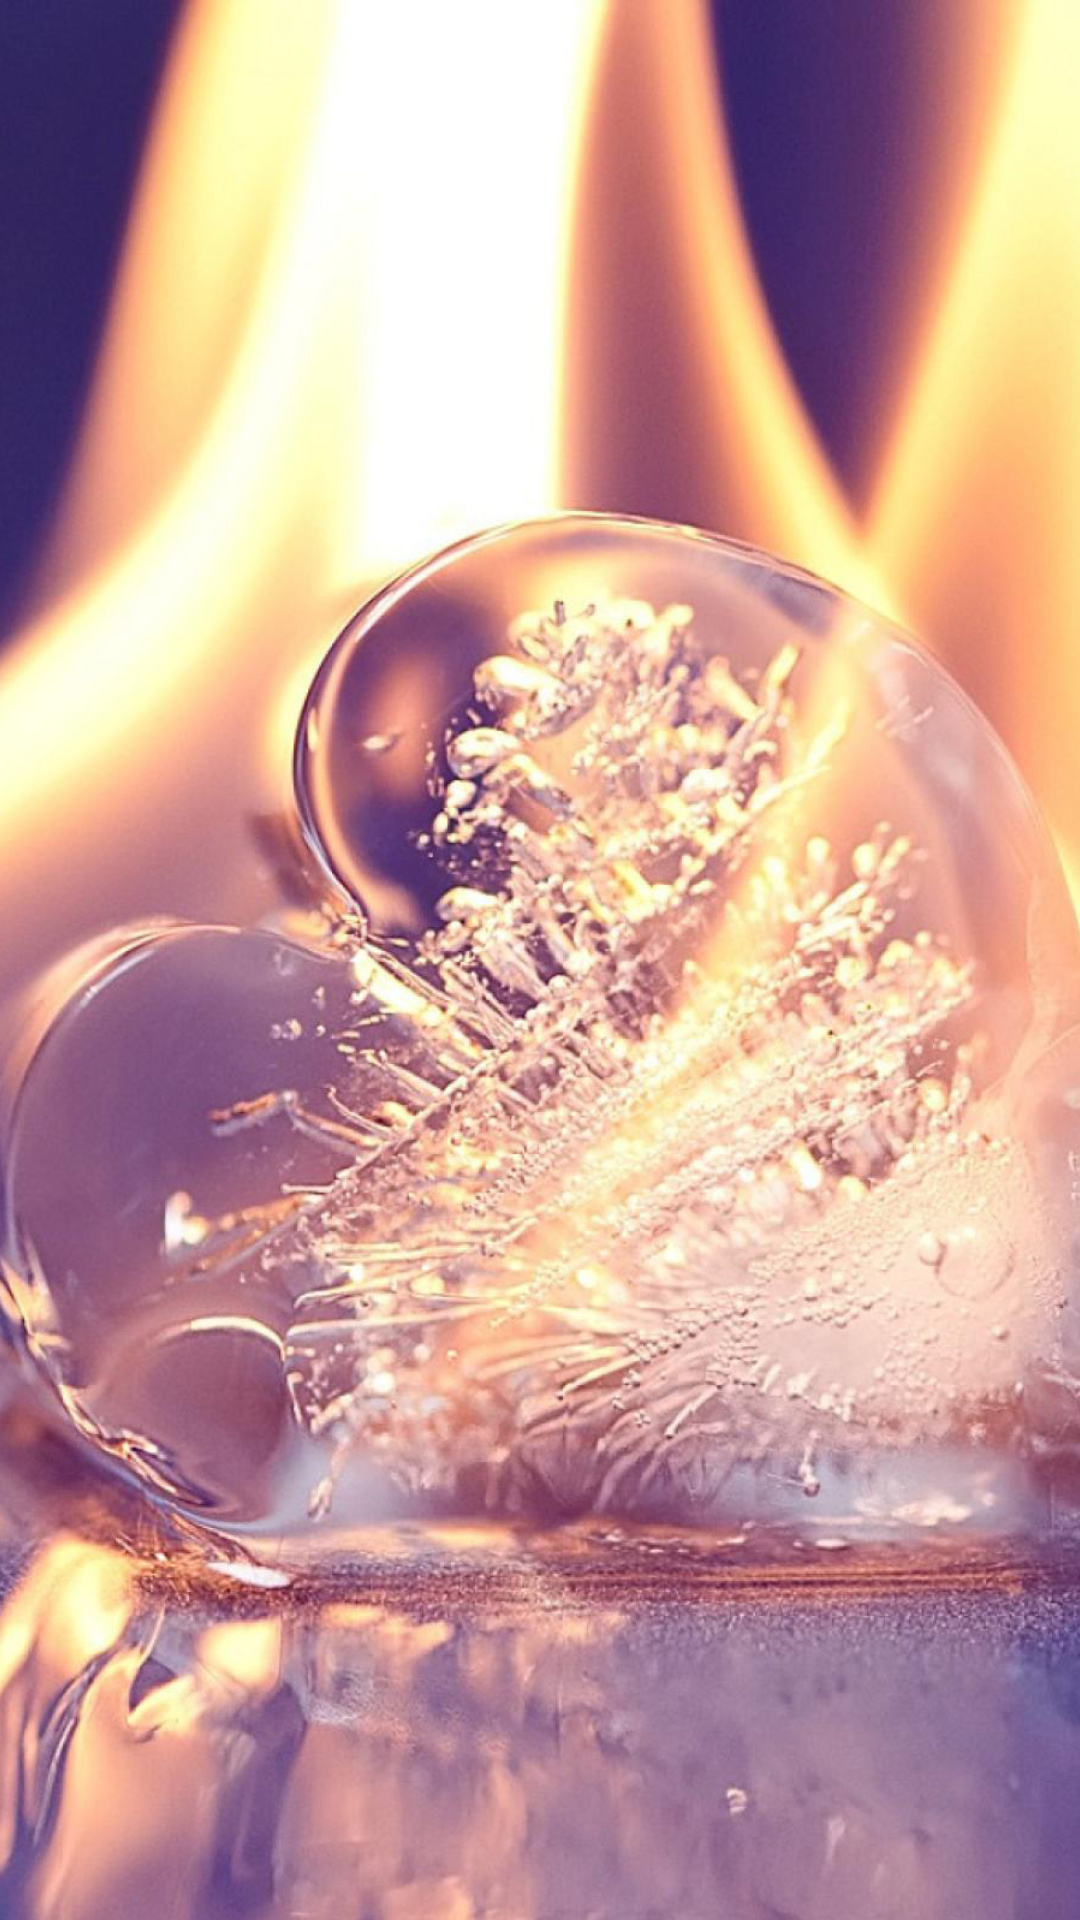 Das Ice heart in fire Wallpaper 1080x1920